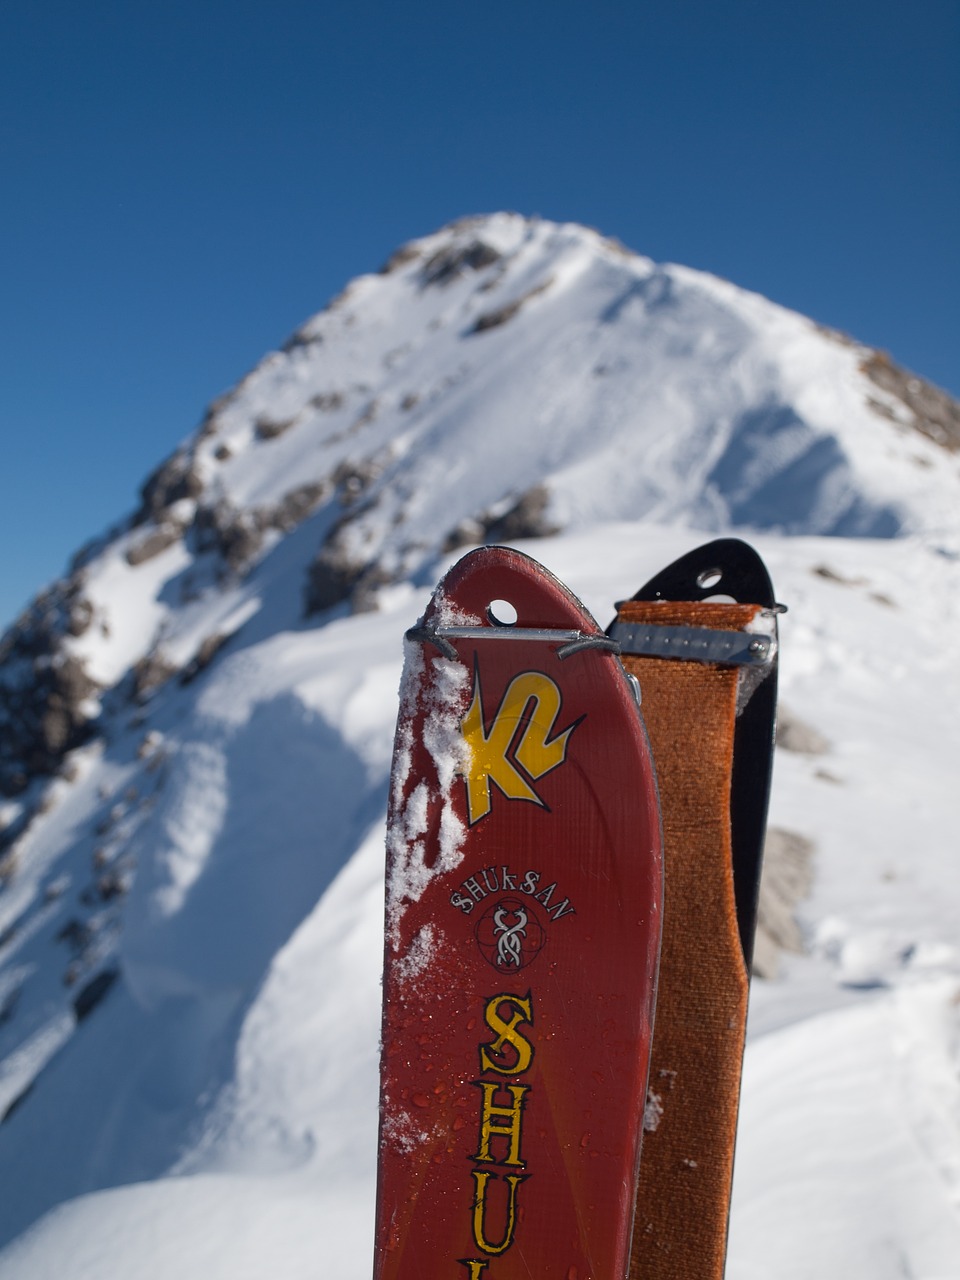 touring skis  climbing skins  mountain free photo